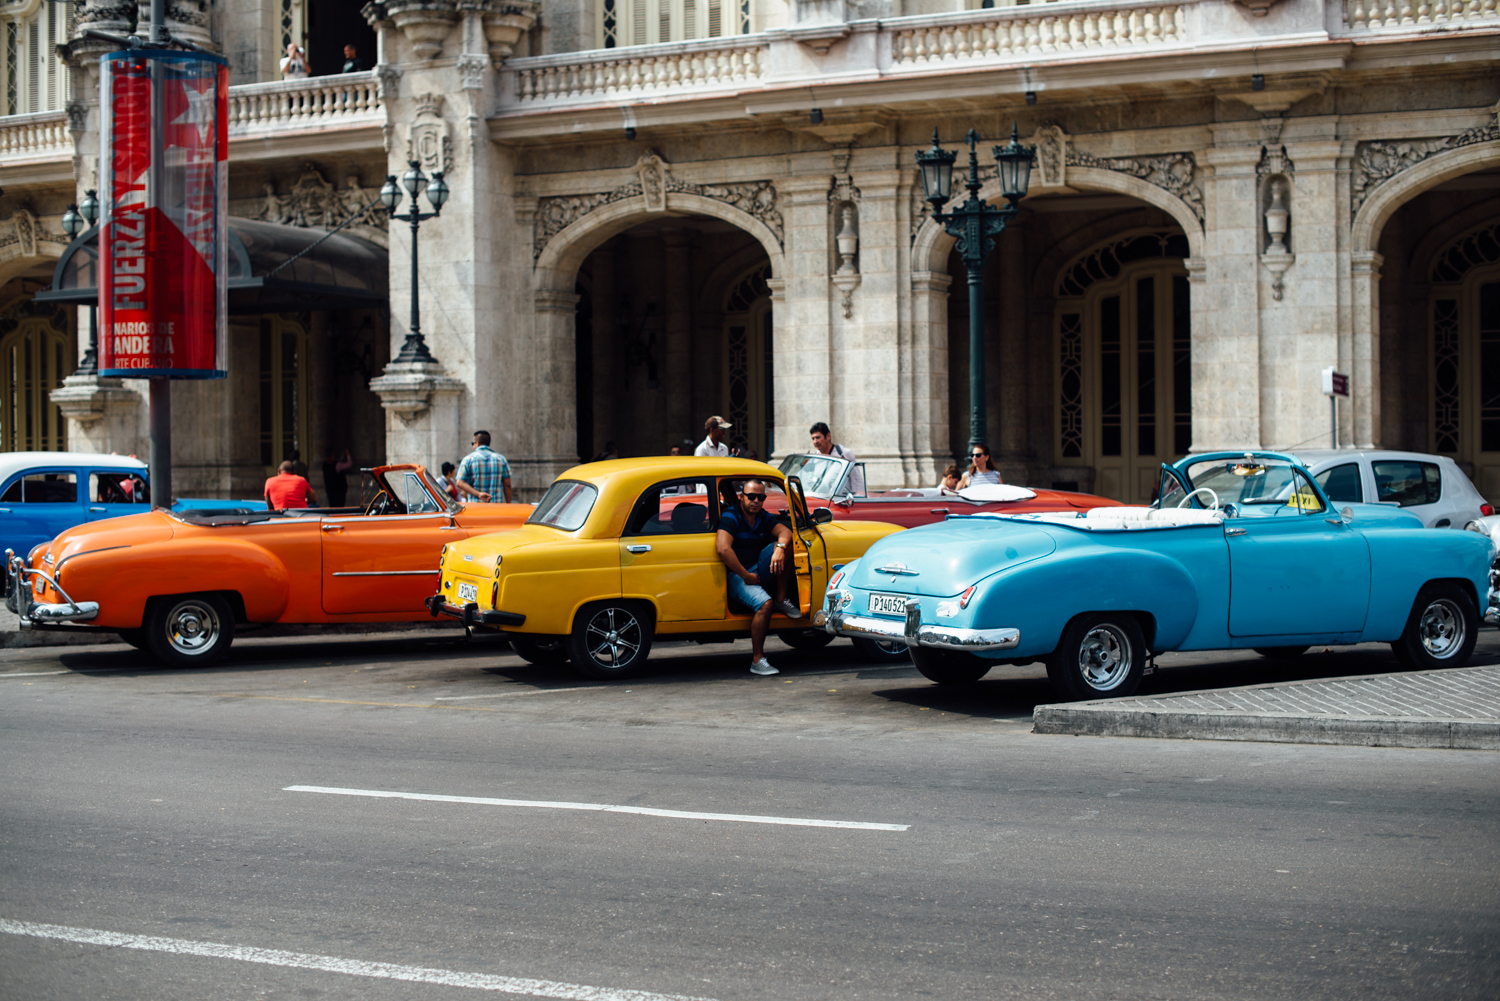 Kuba Rundreise_Kuba Rundreise planen_Tipps Kuba Reise_Kuba Checkliste_Kuba Interneut_Reiseroute_Flüge_Final1